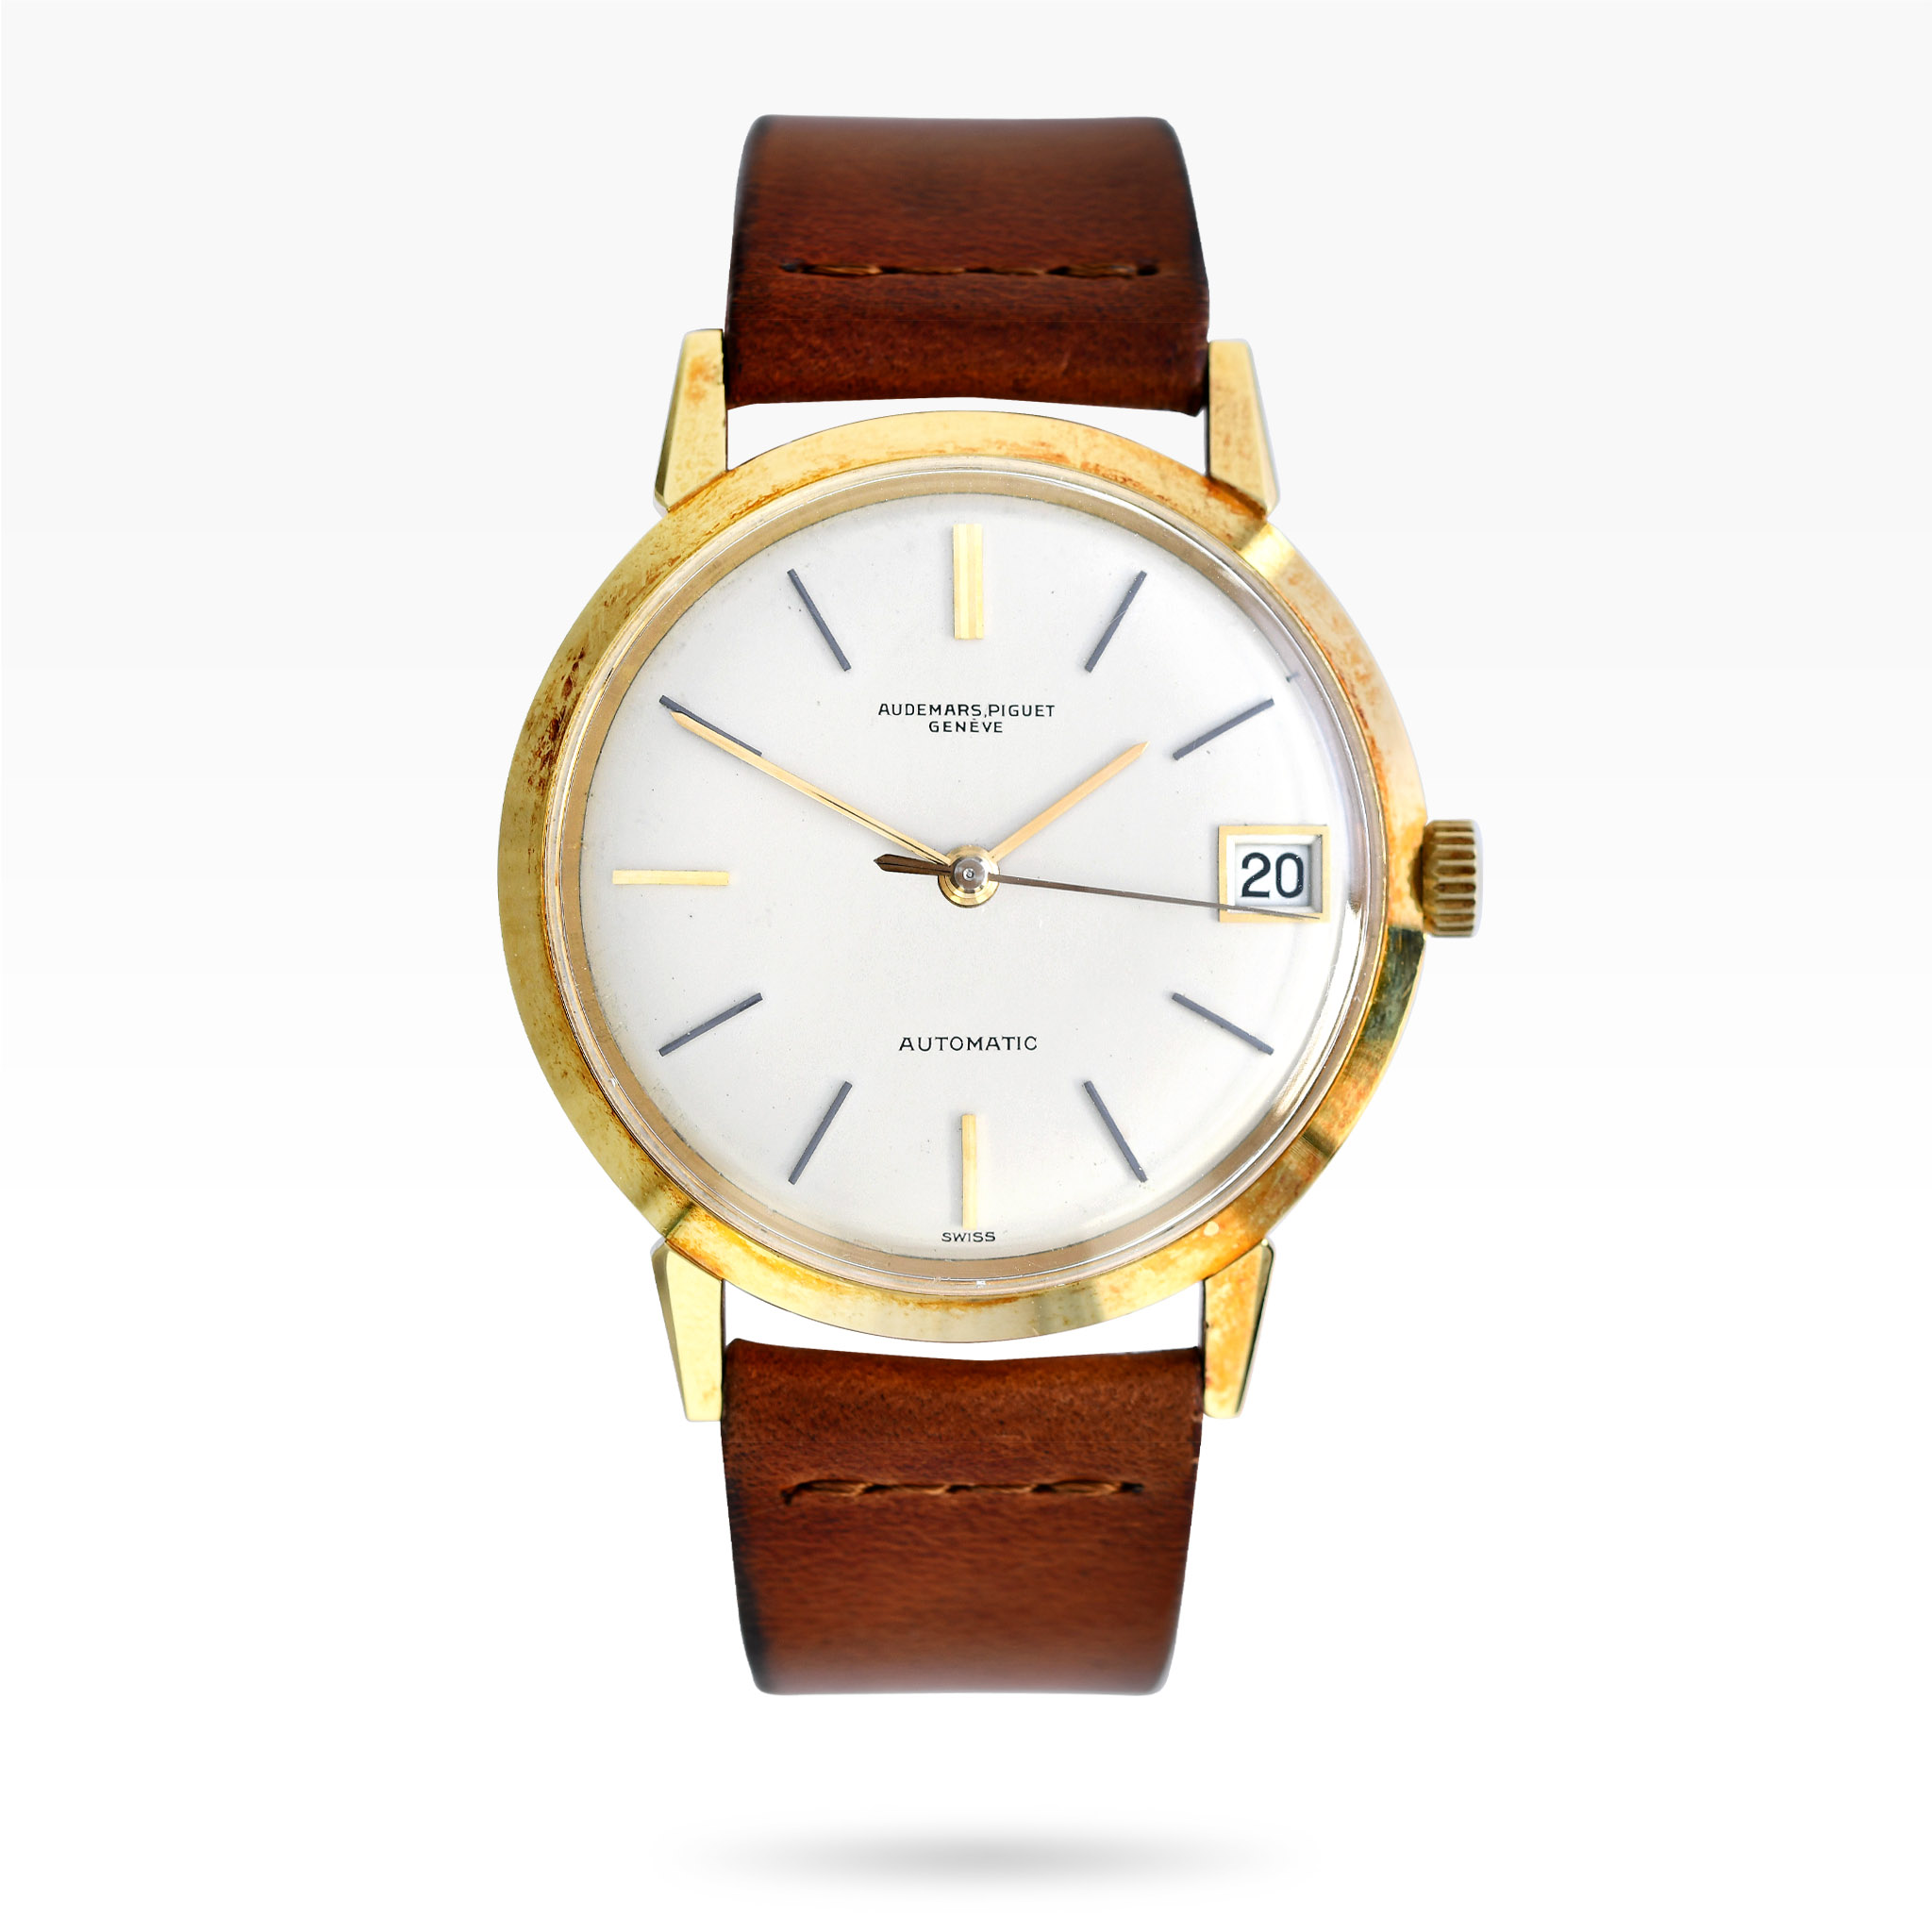 Audemars-Piguet-ref5209ba-automatic-dress-watch-img-main1